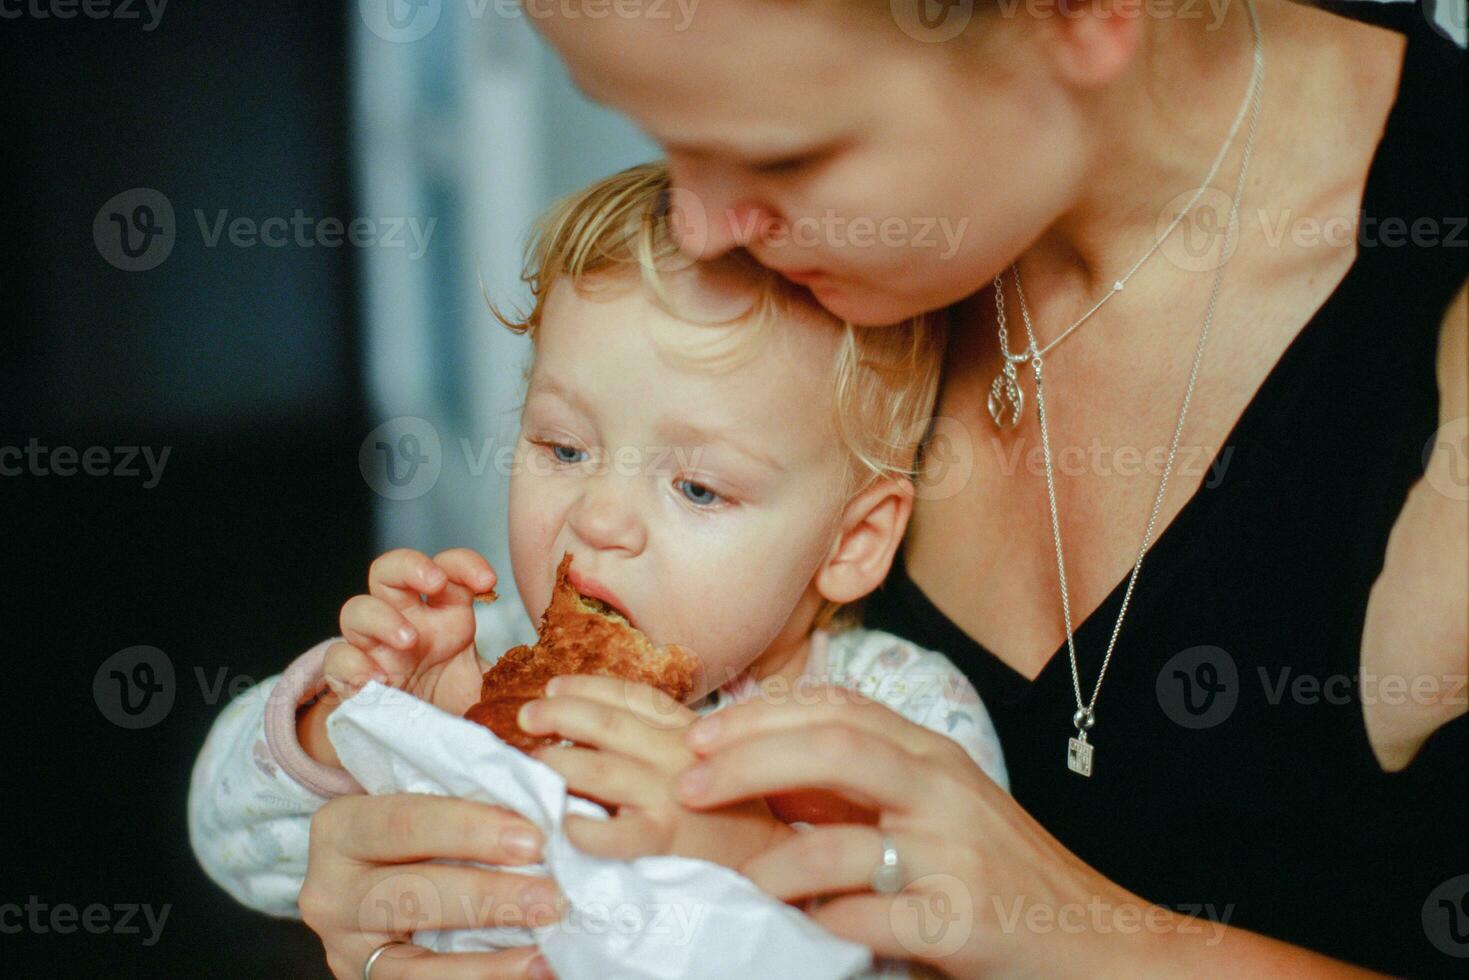 voeden een baby met gebakje foto